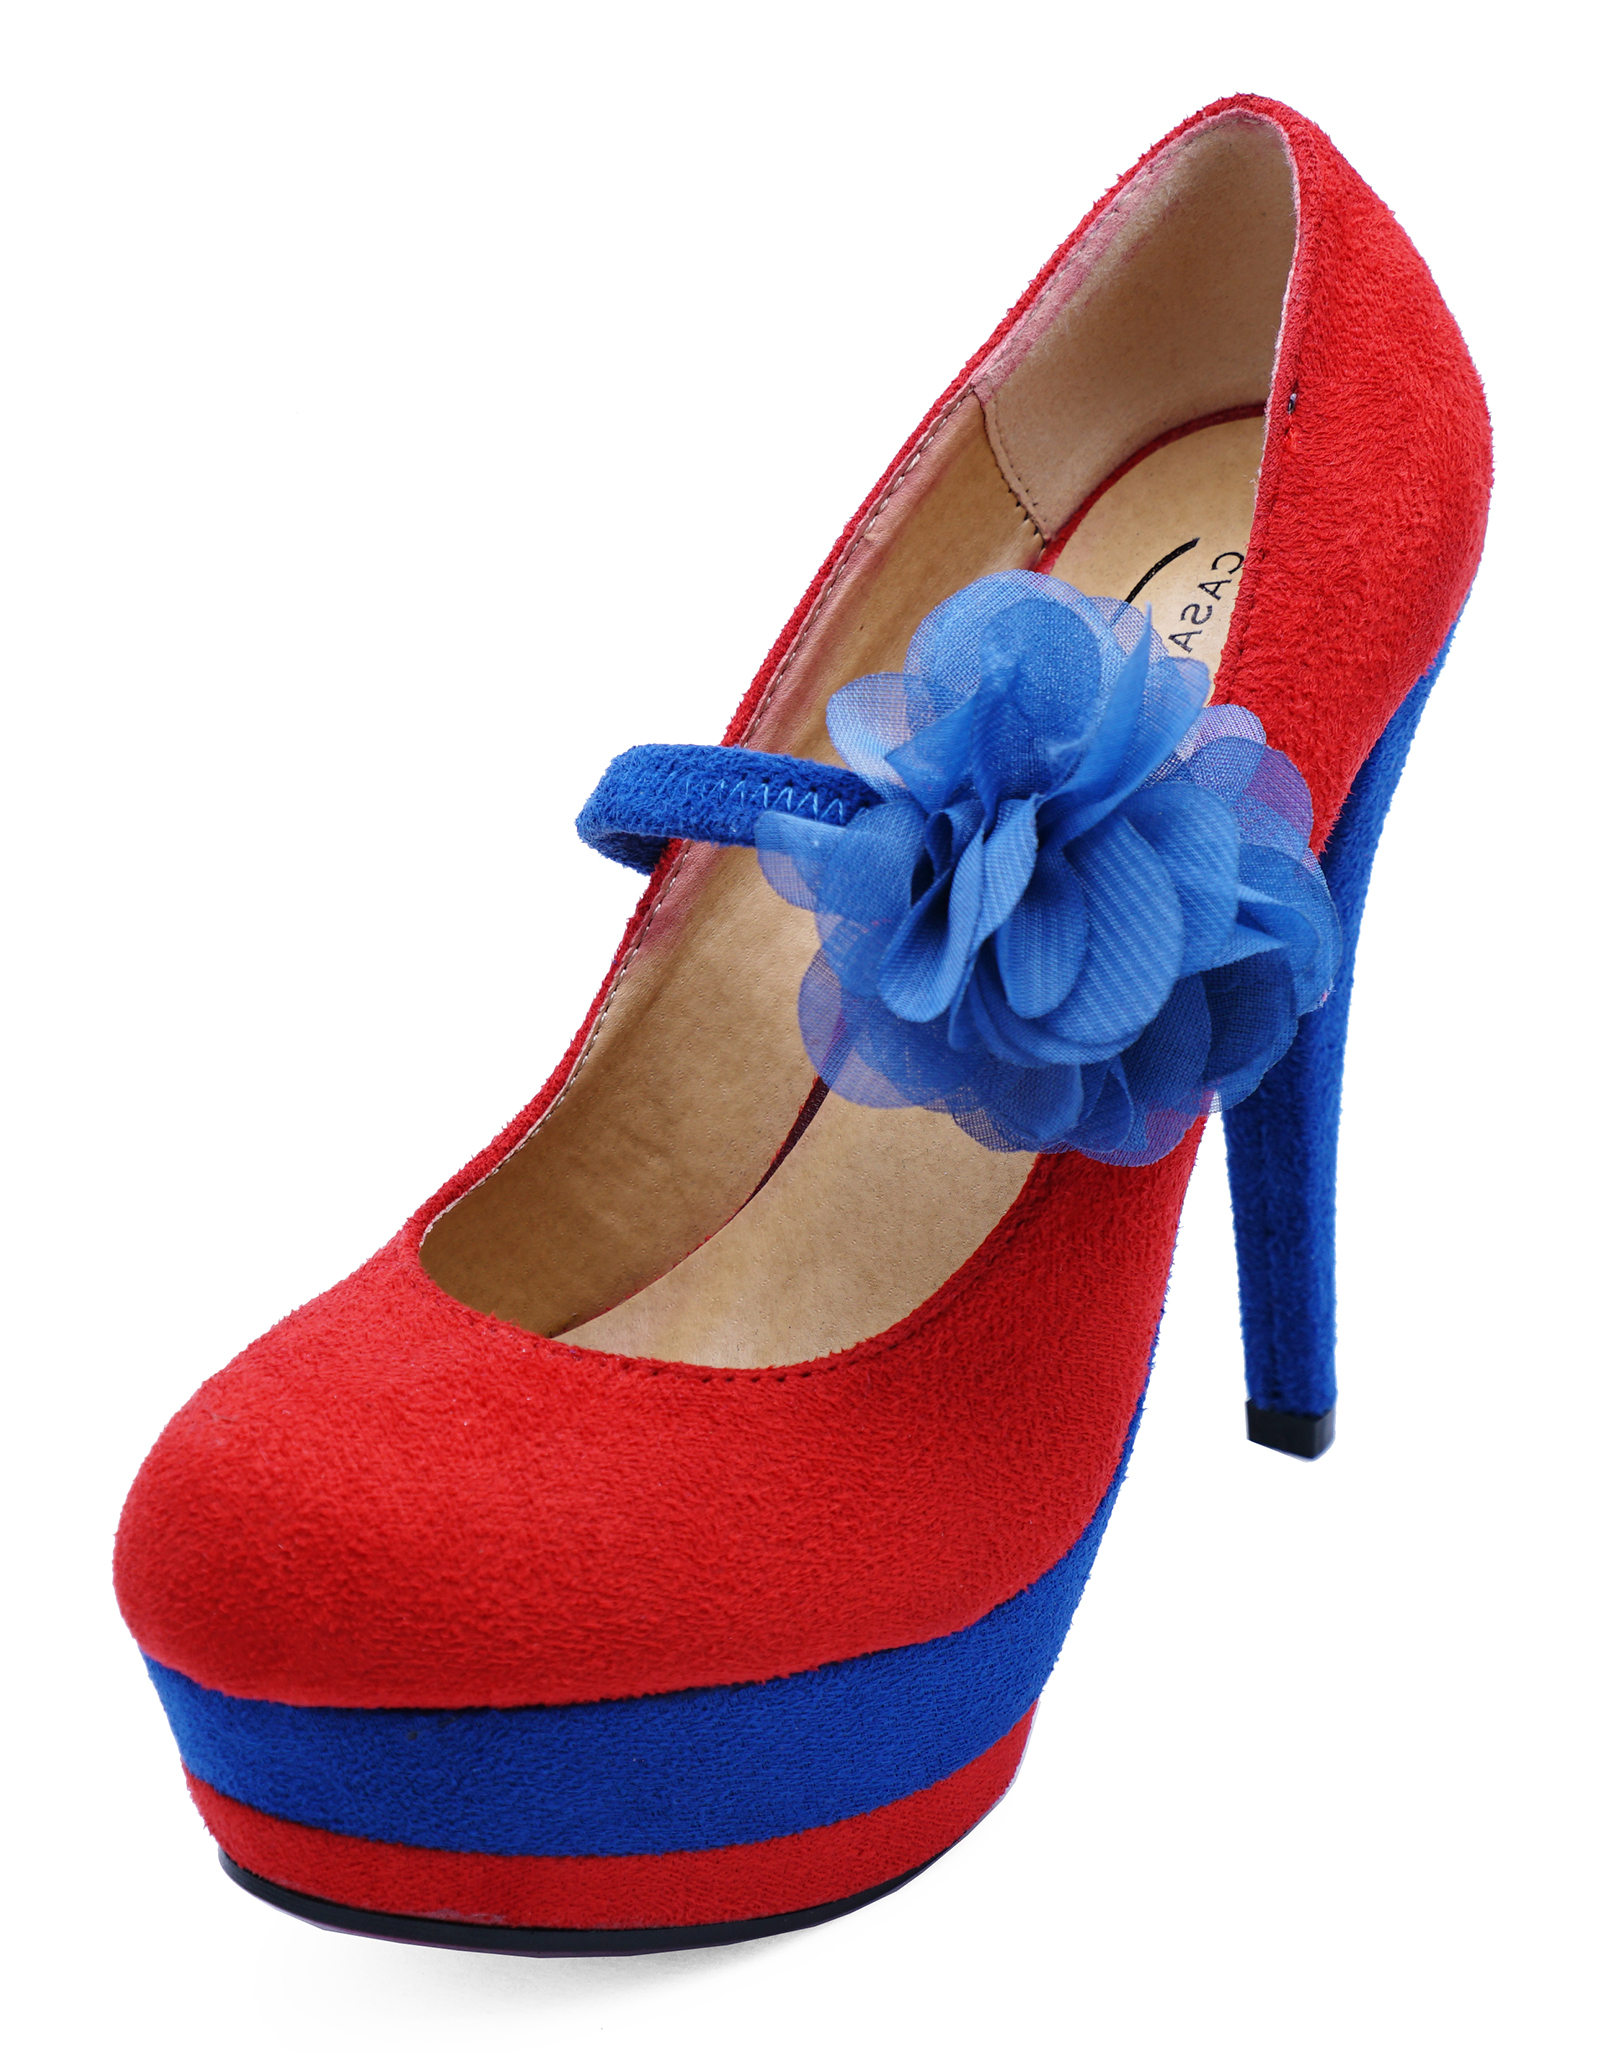 ladies blue court shoes